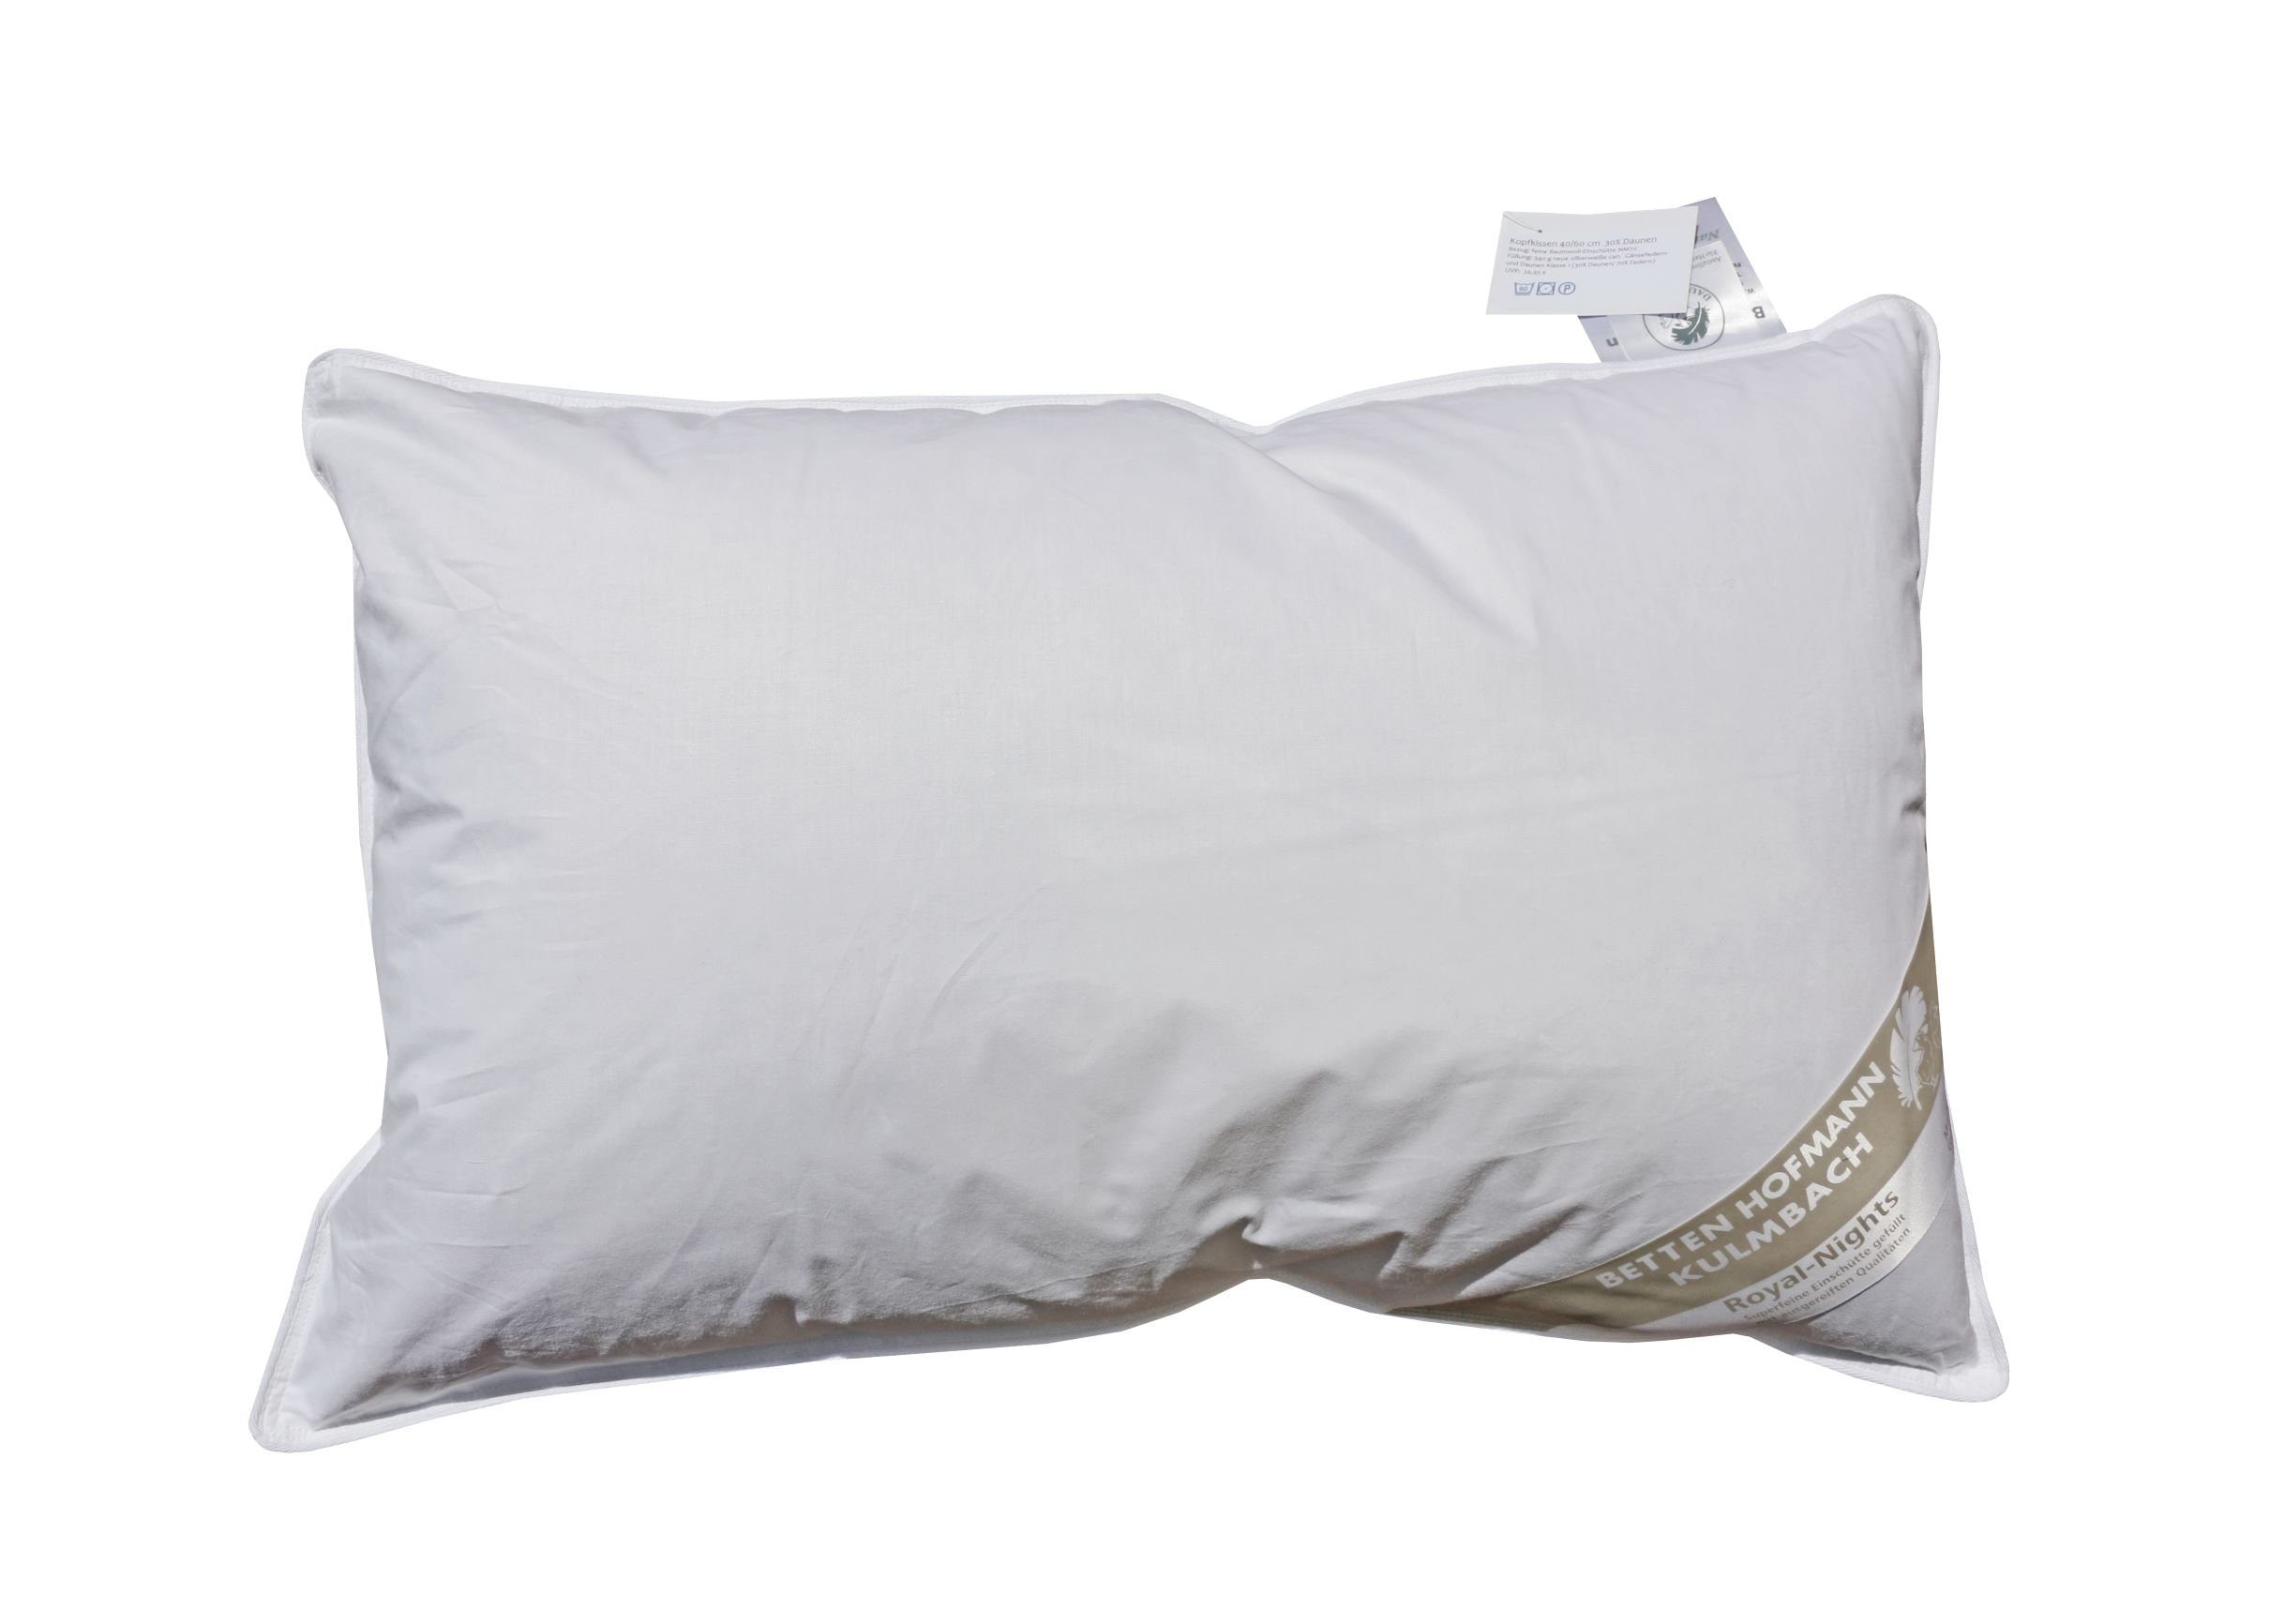 Traumschlaf Premium Interlock Jersey Universal Bezug für Nackenstützkissen  günstig online kaufen bei Bettwaren Shop